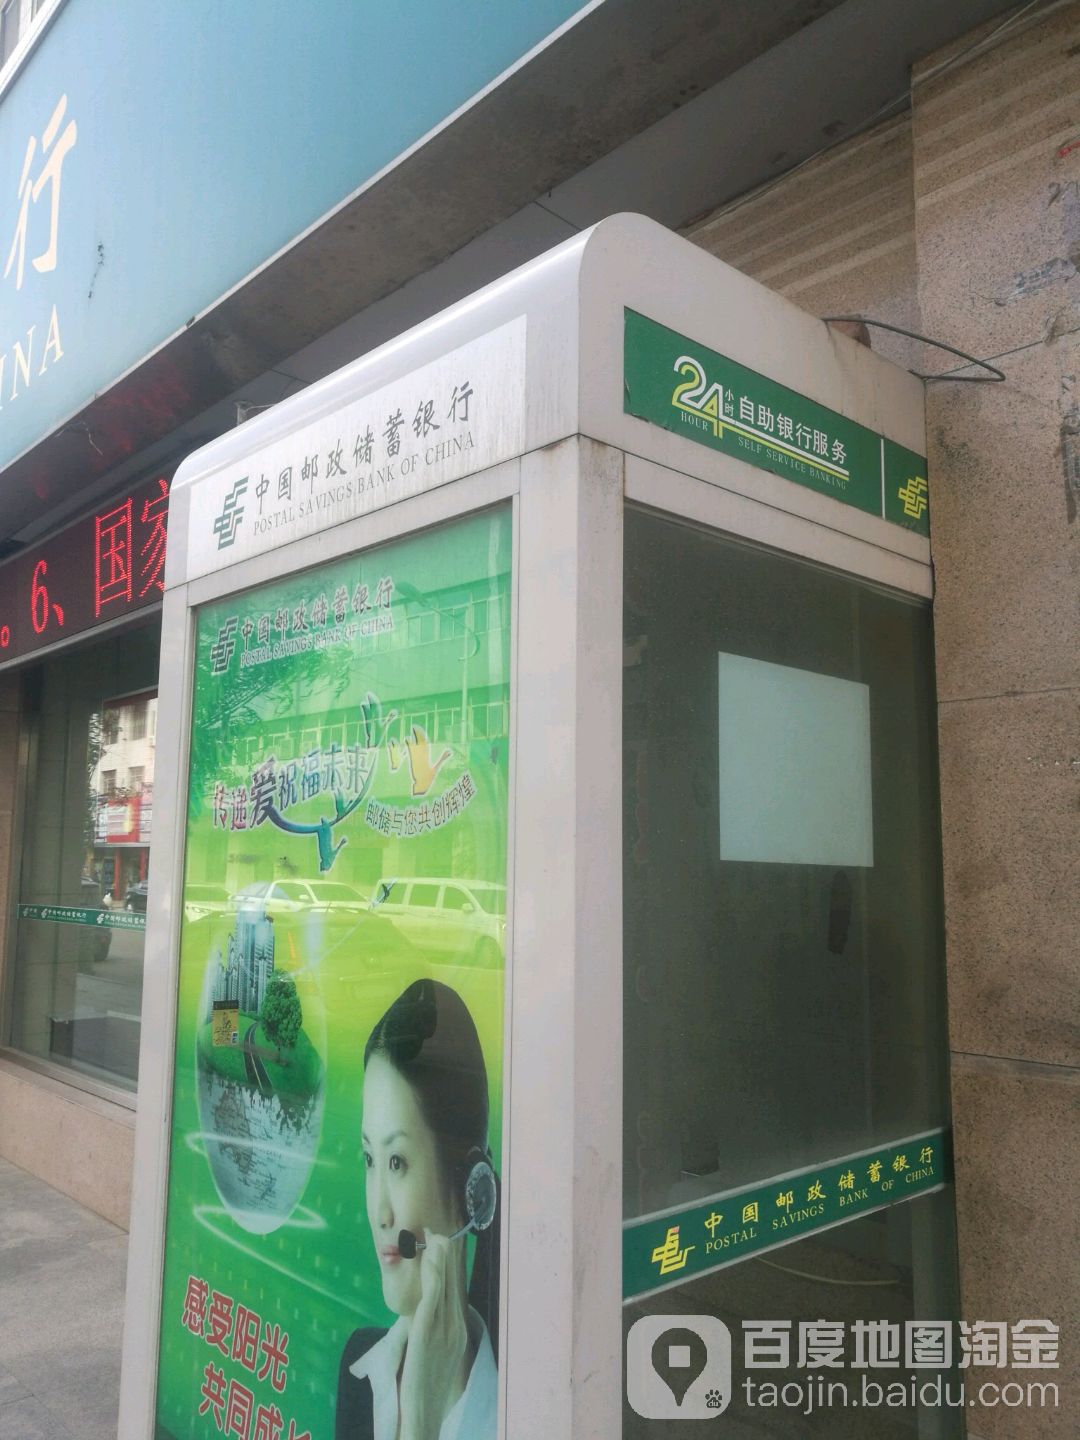 中国邮政储蓄银行24小时自助银行(大柳塔支行)